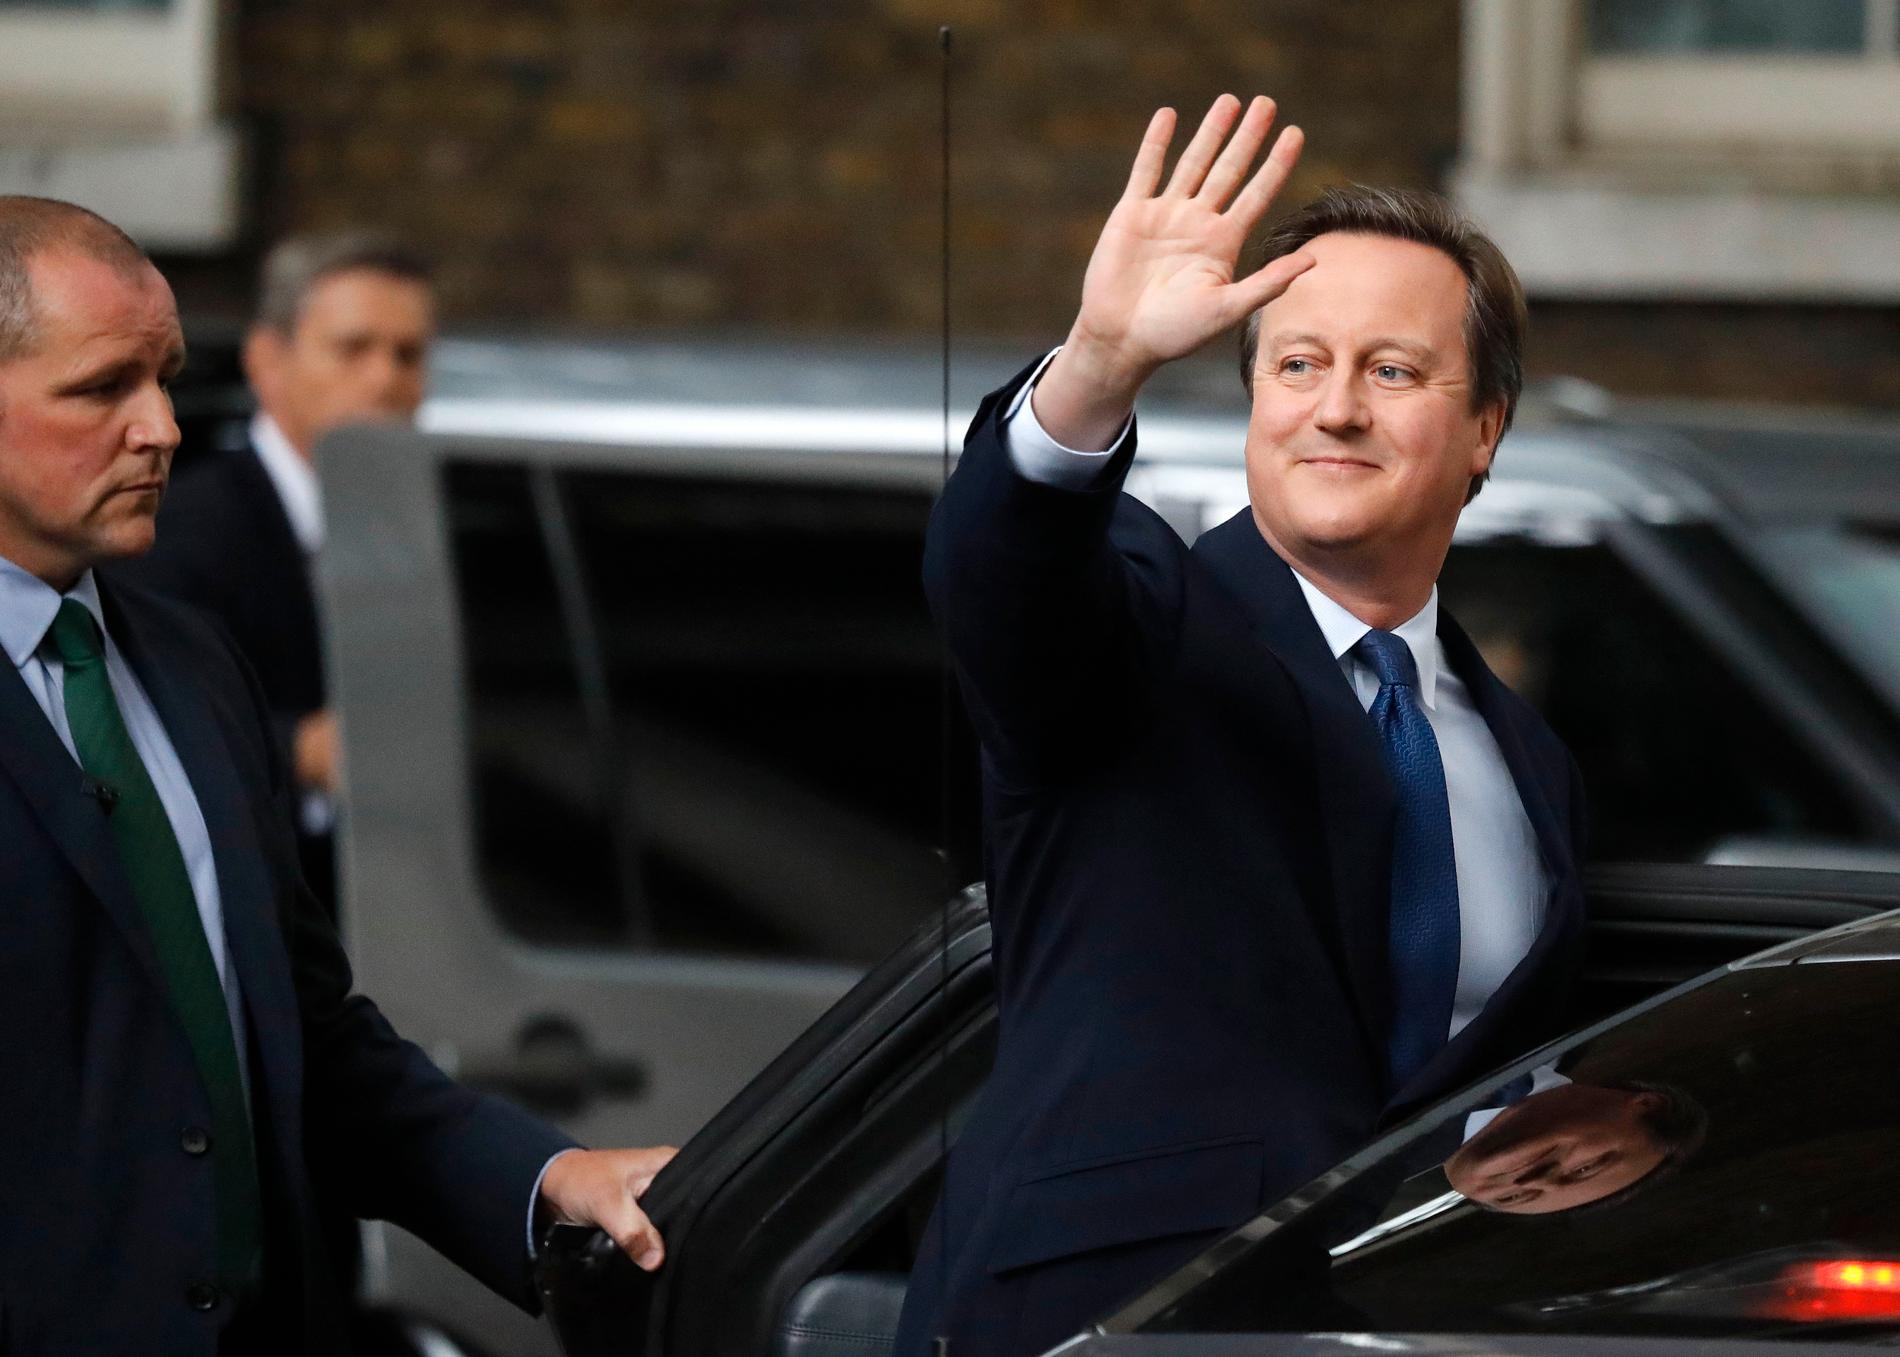 Det brittiska folkets beslut att lämna EU i folkomröstningen 2016 fick dåvarande premiärministern David Cameron att också lämna – sitt jobb. Den 13 juli 2016 for han till drottningen för att avgå.